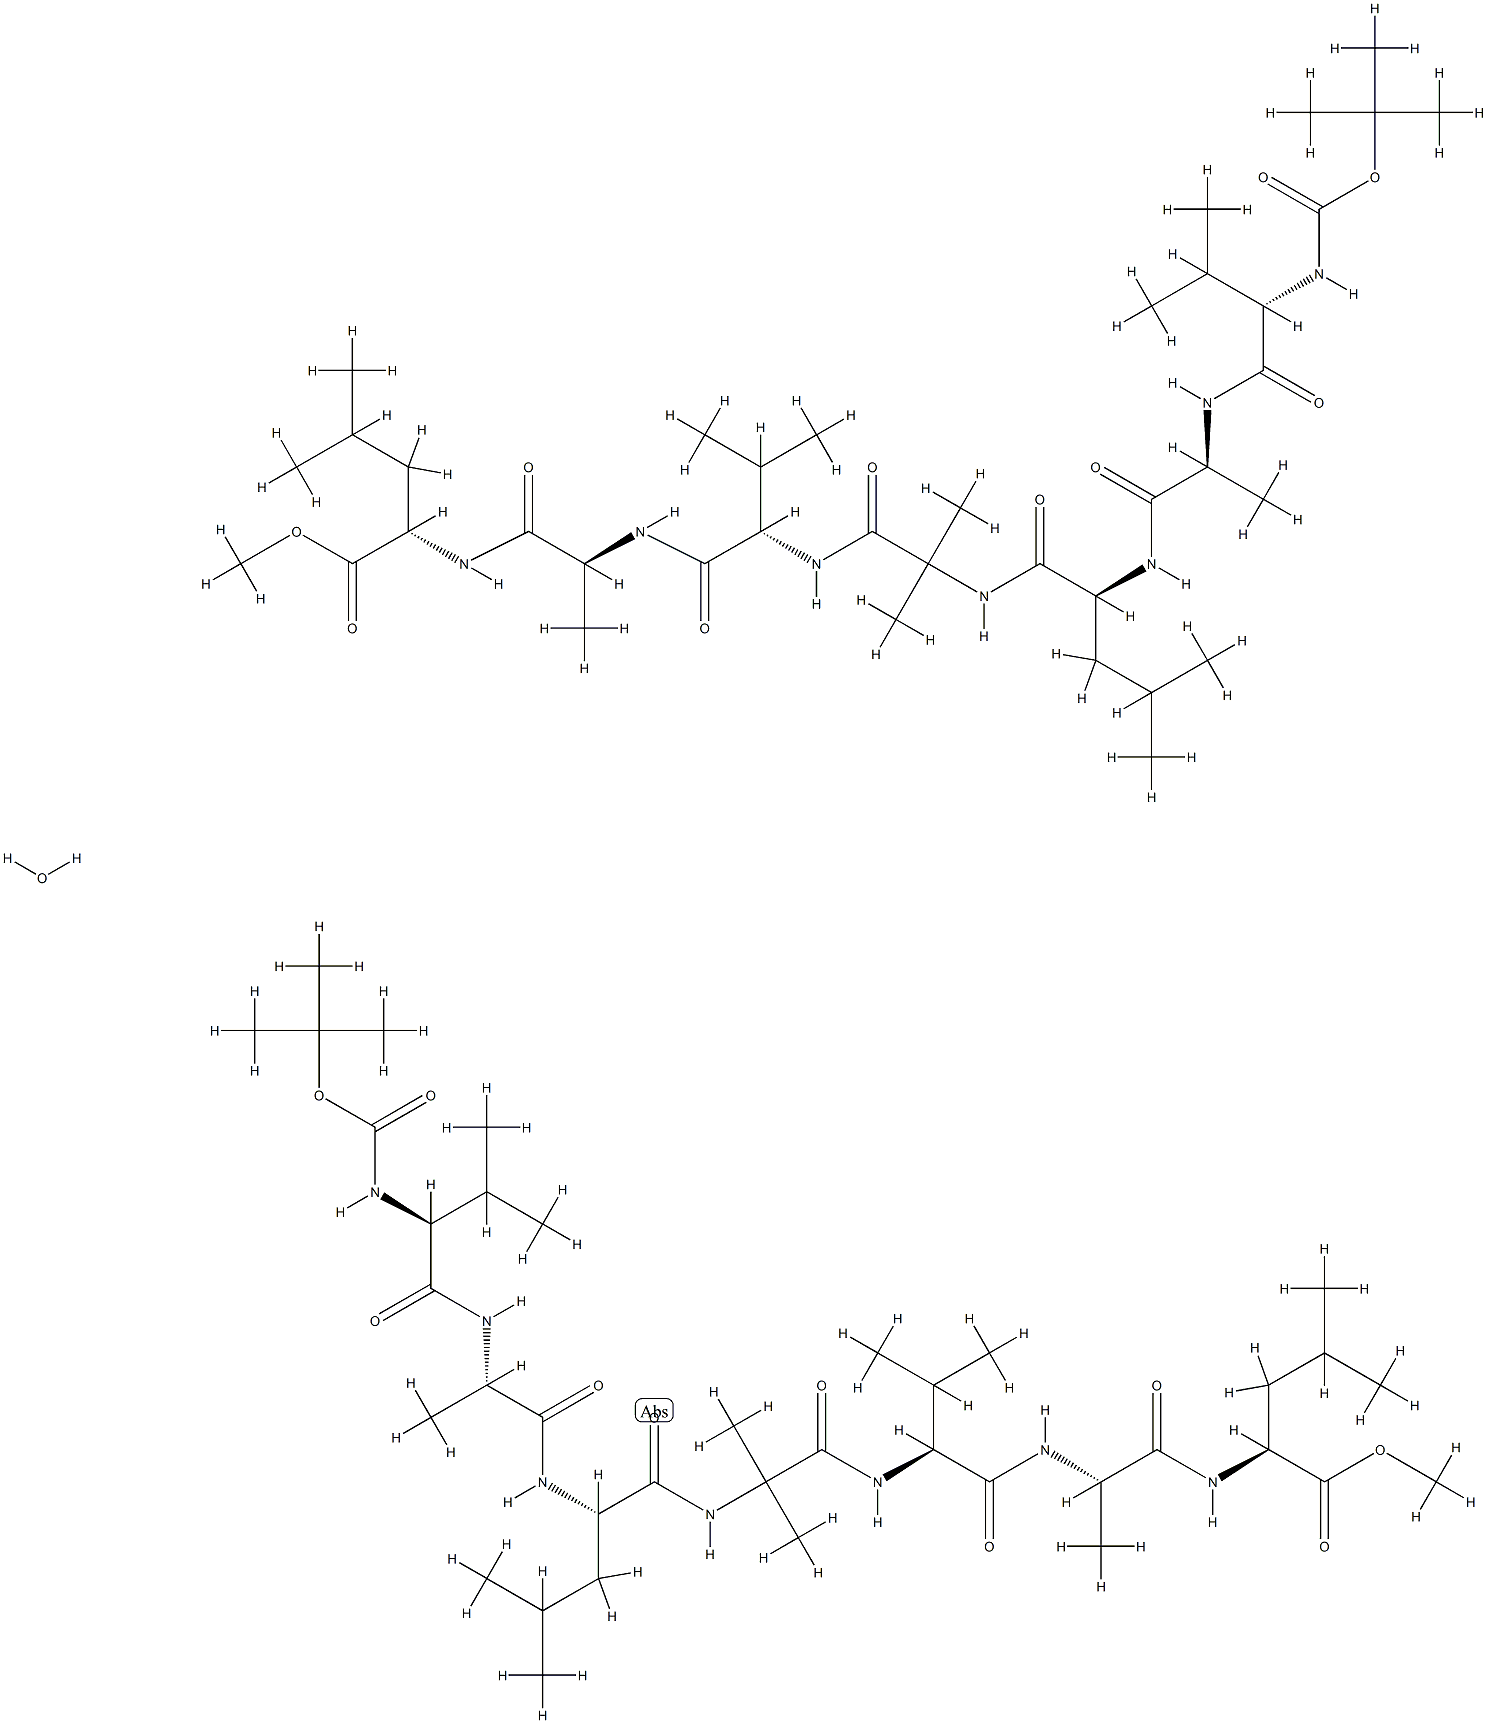 tert-butyloxycarbonyl-valyl-alanyl-leucyl-2-aminoisobutyryl-valyl-alanyl-leucyl methyl ester